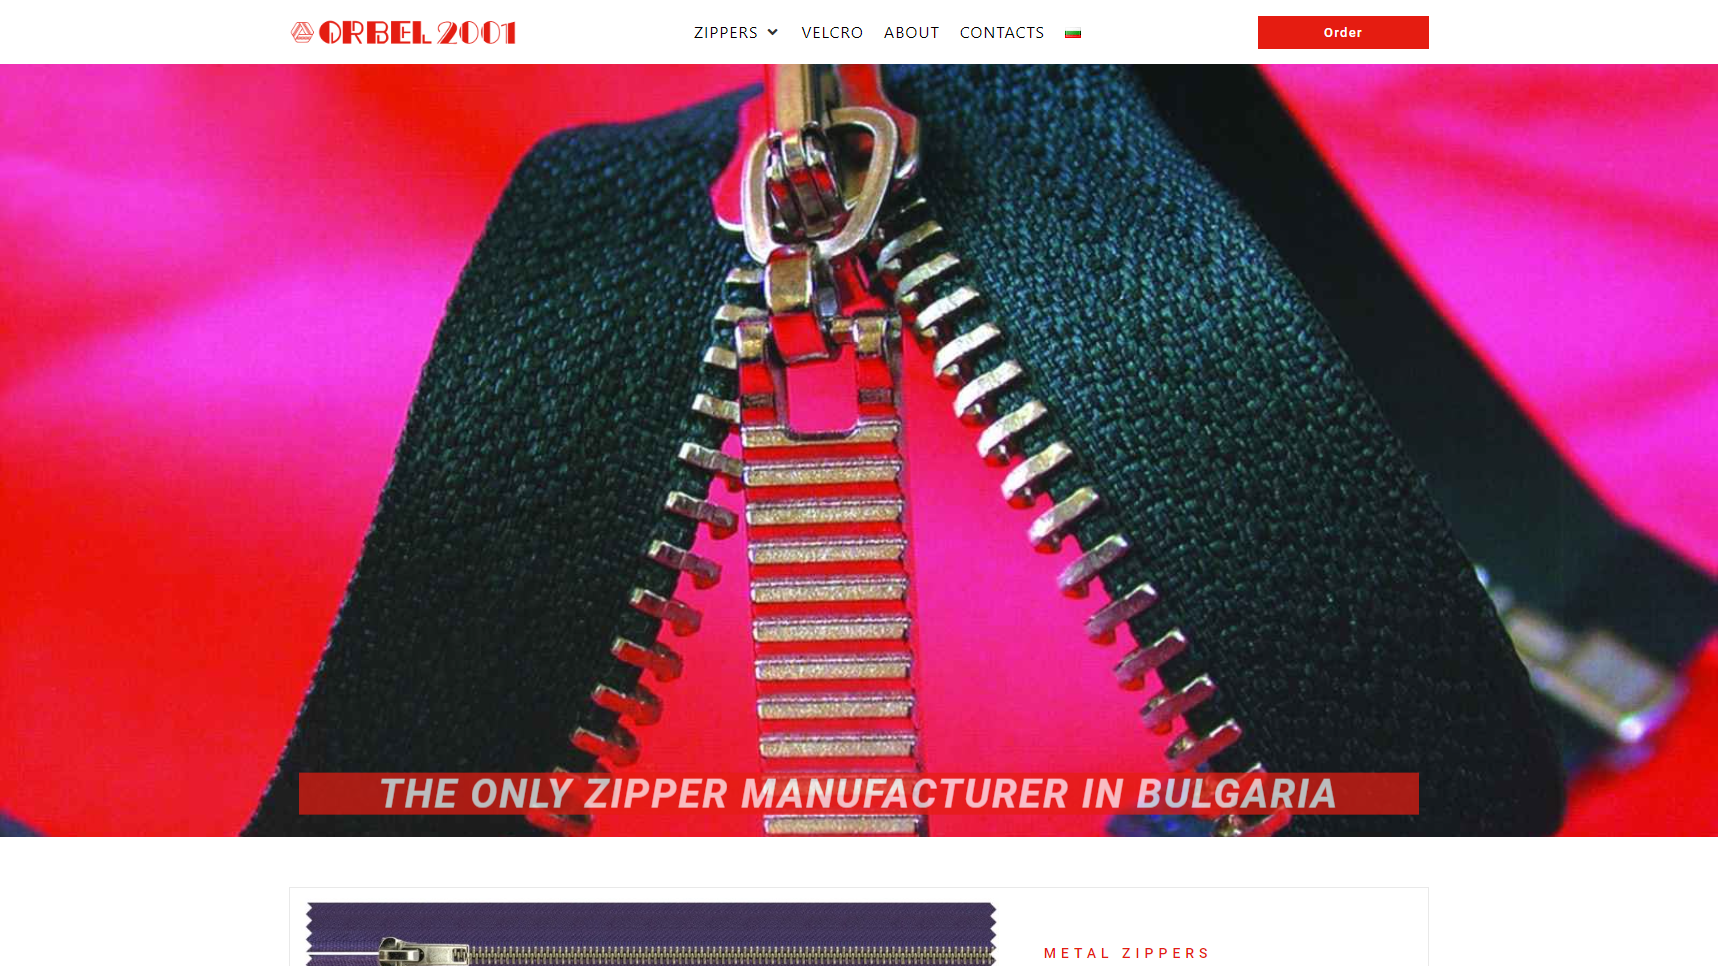 Orbel - Zipper Manufacturer